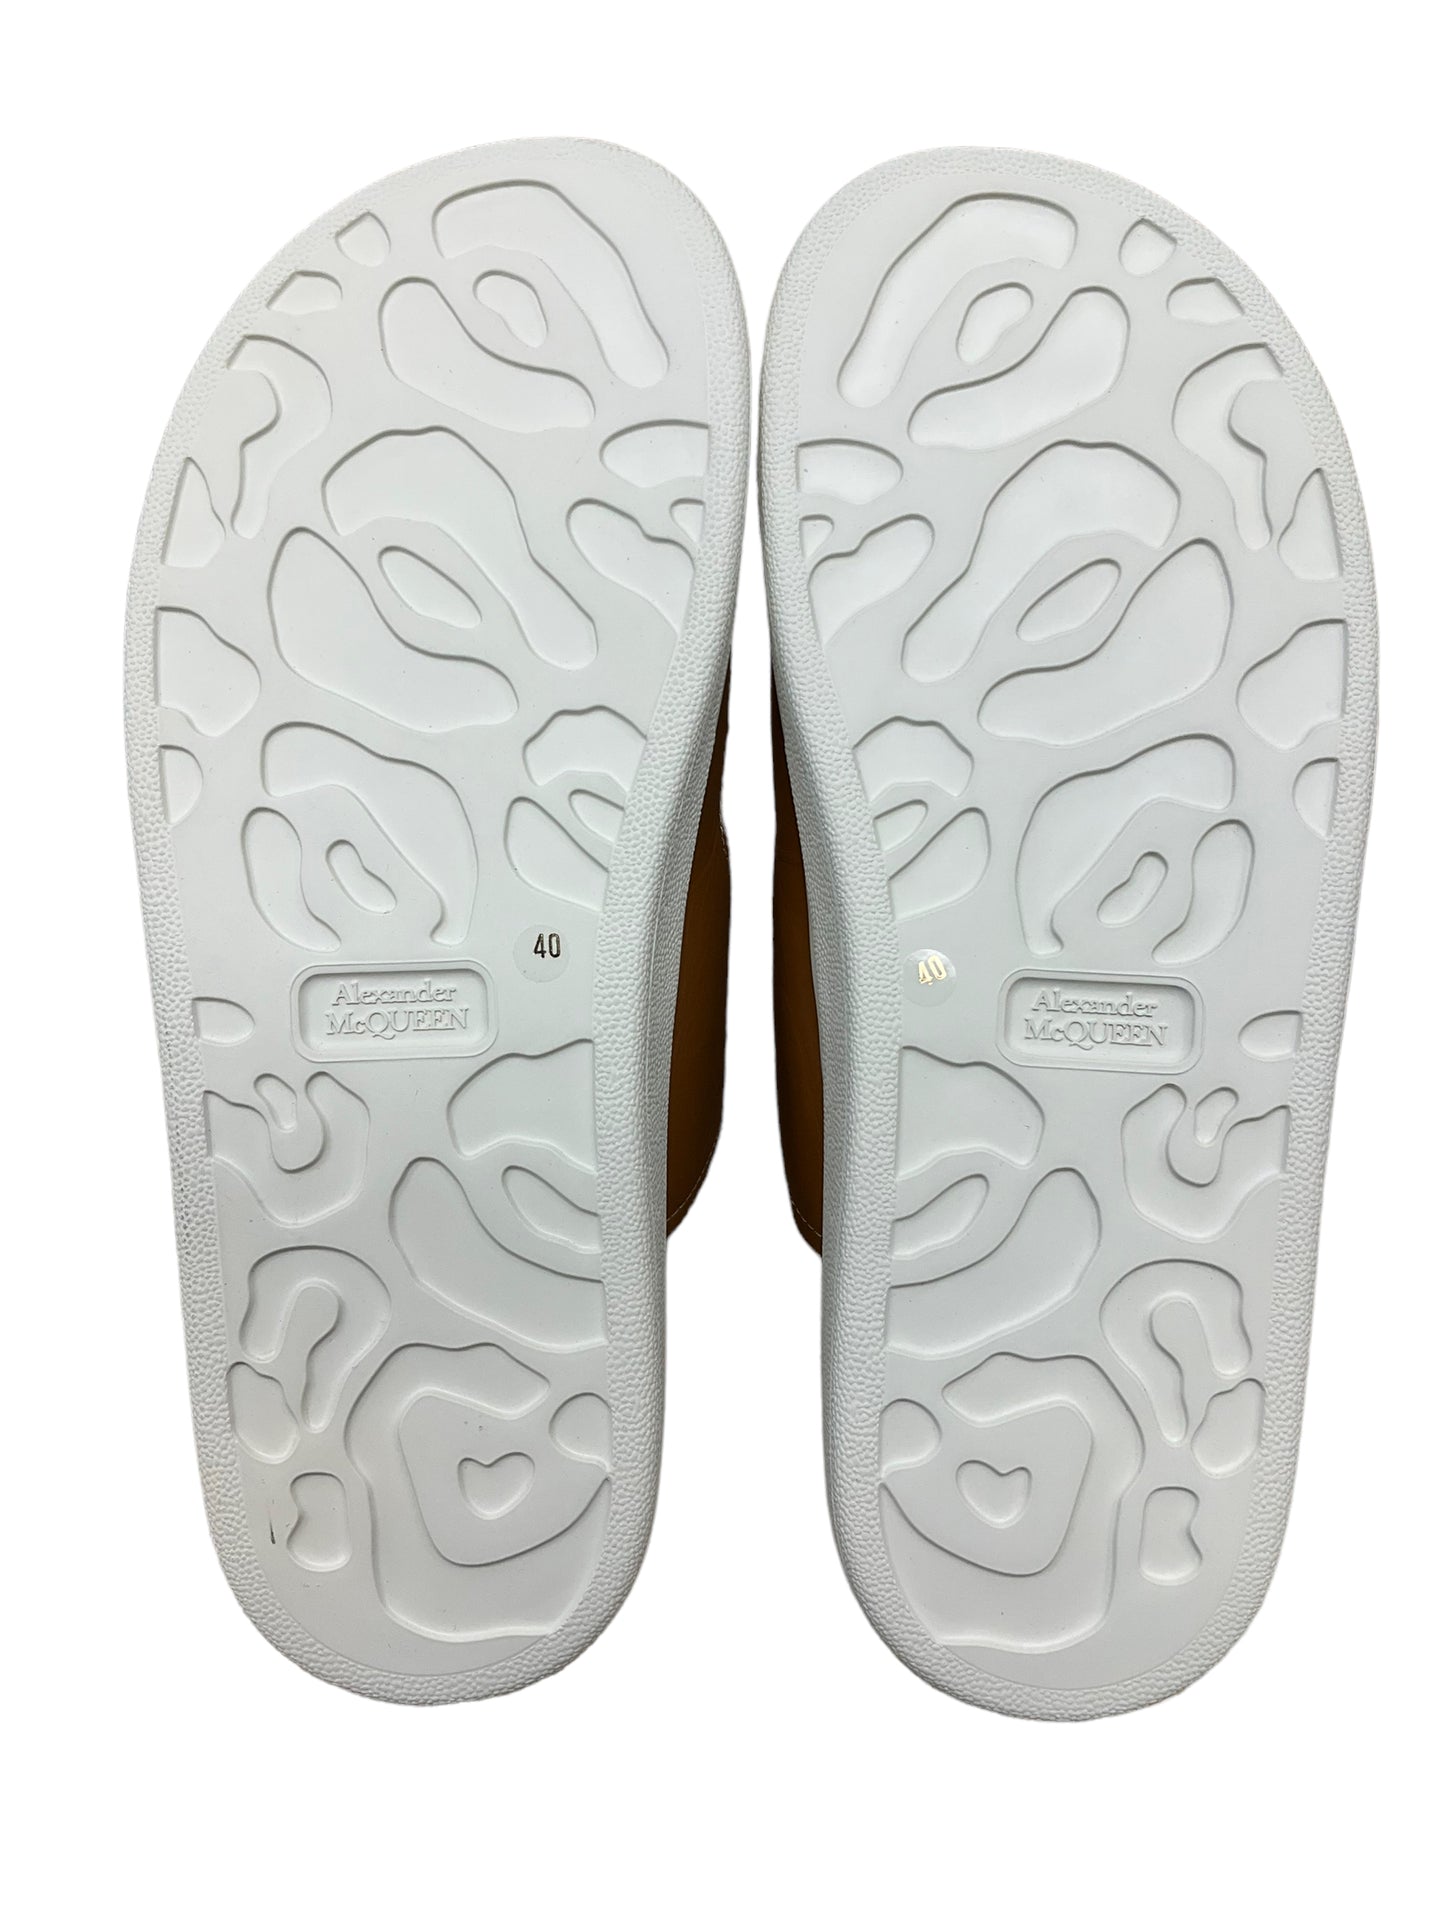 Sandals Luxury Designer By Alexander Mcqueen  Size: 10